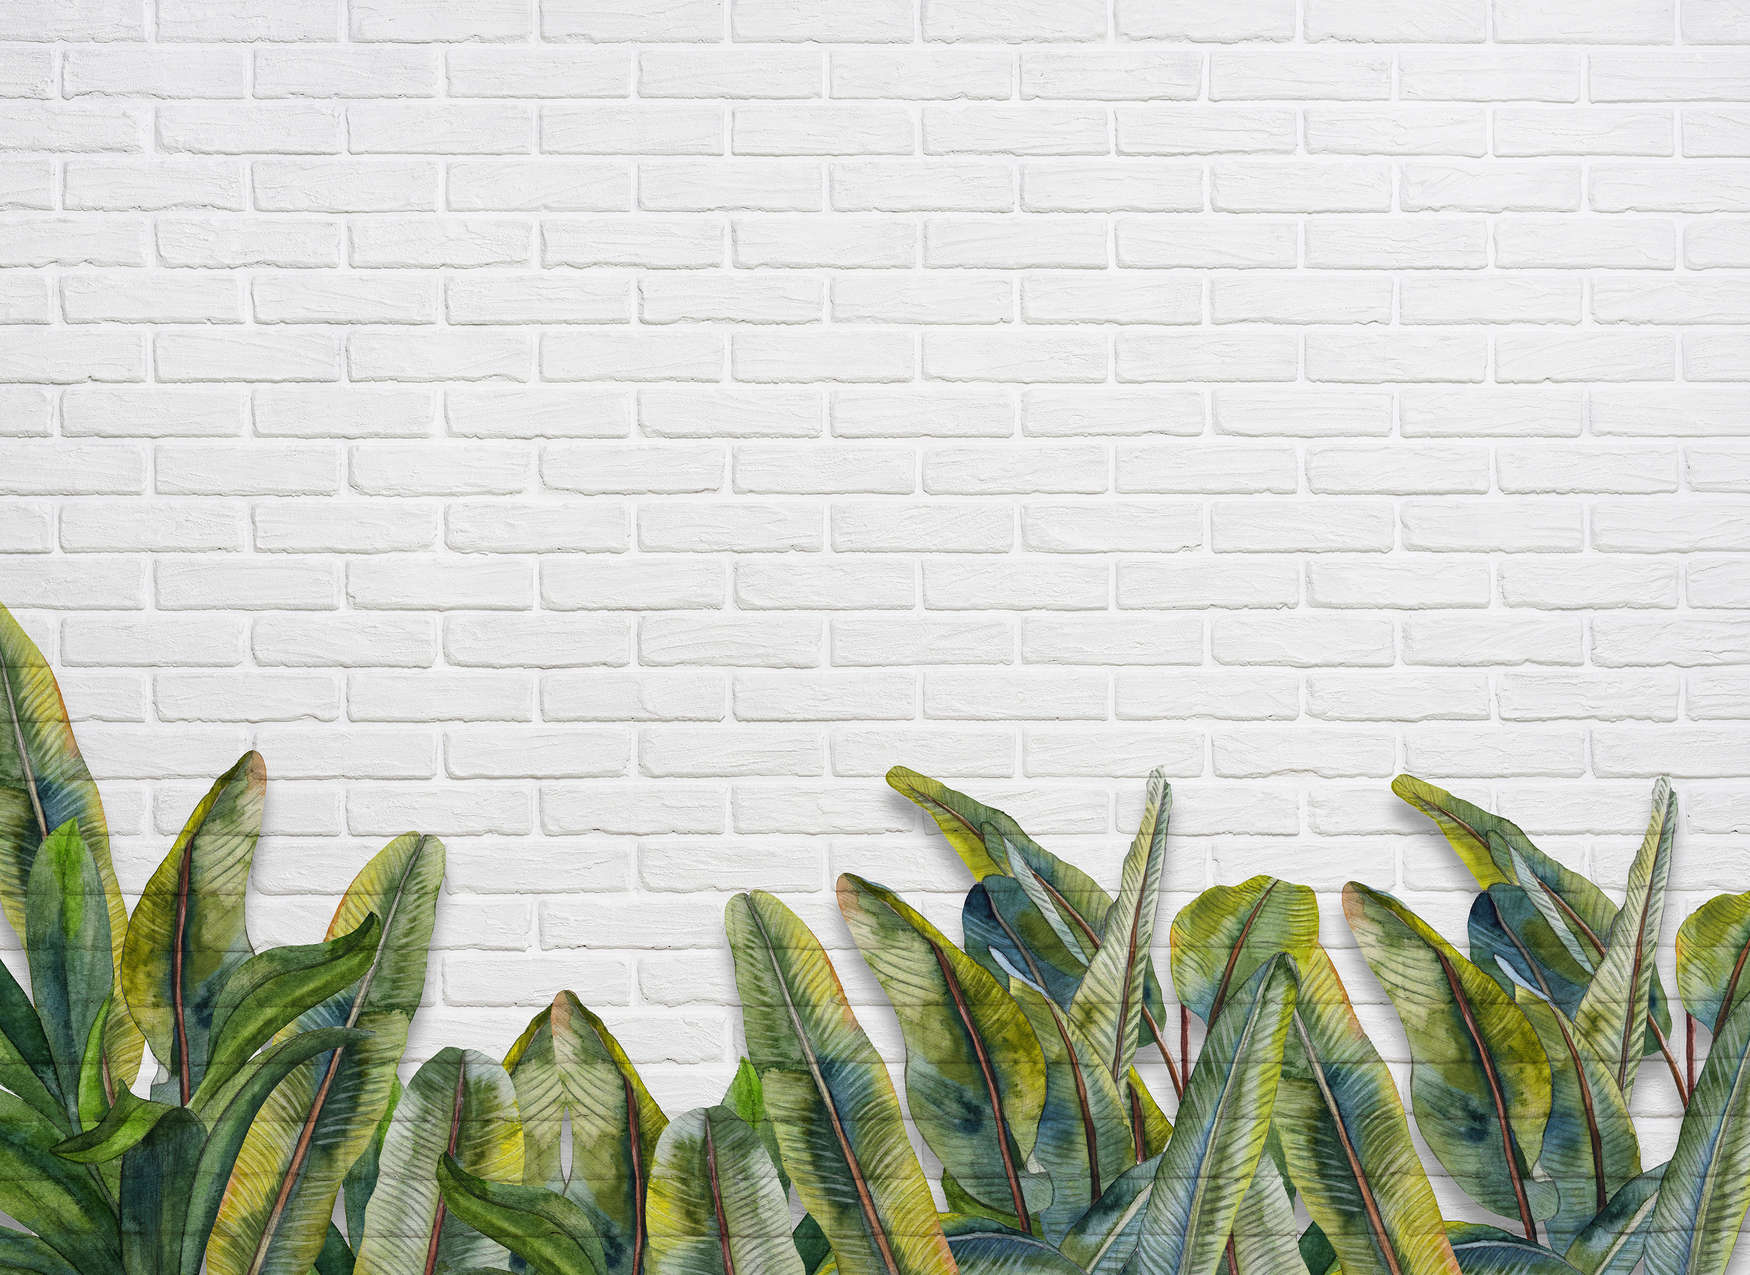             Fototapete mit Blättern vor weißer Backsteinmauer – Grün, Weiß
        